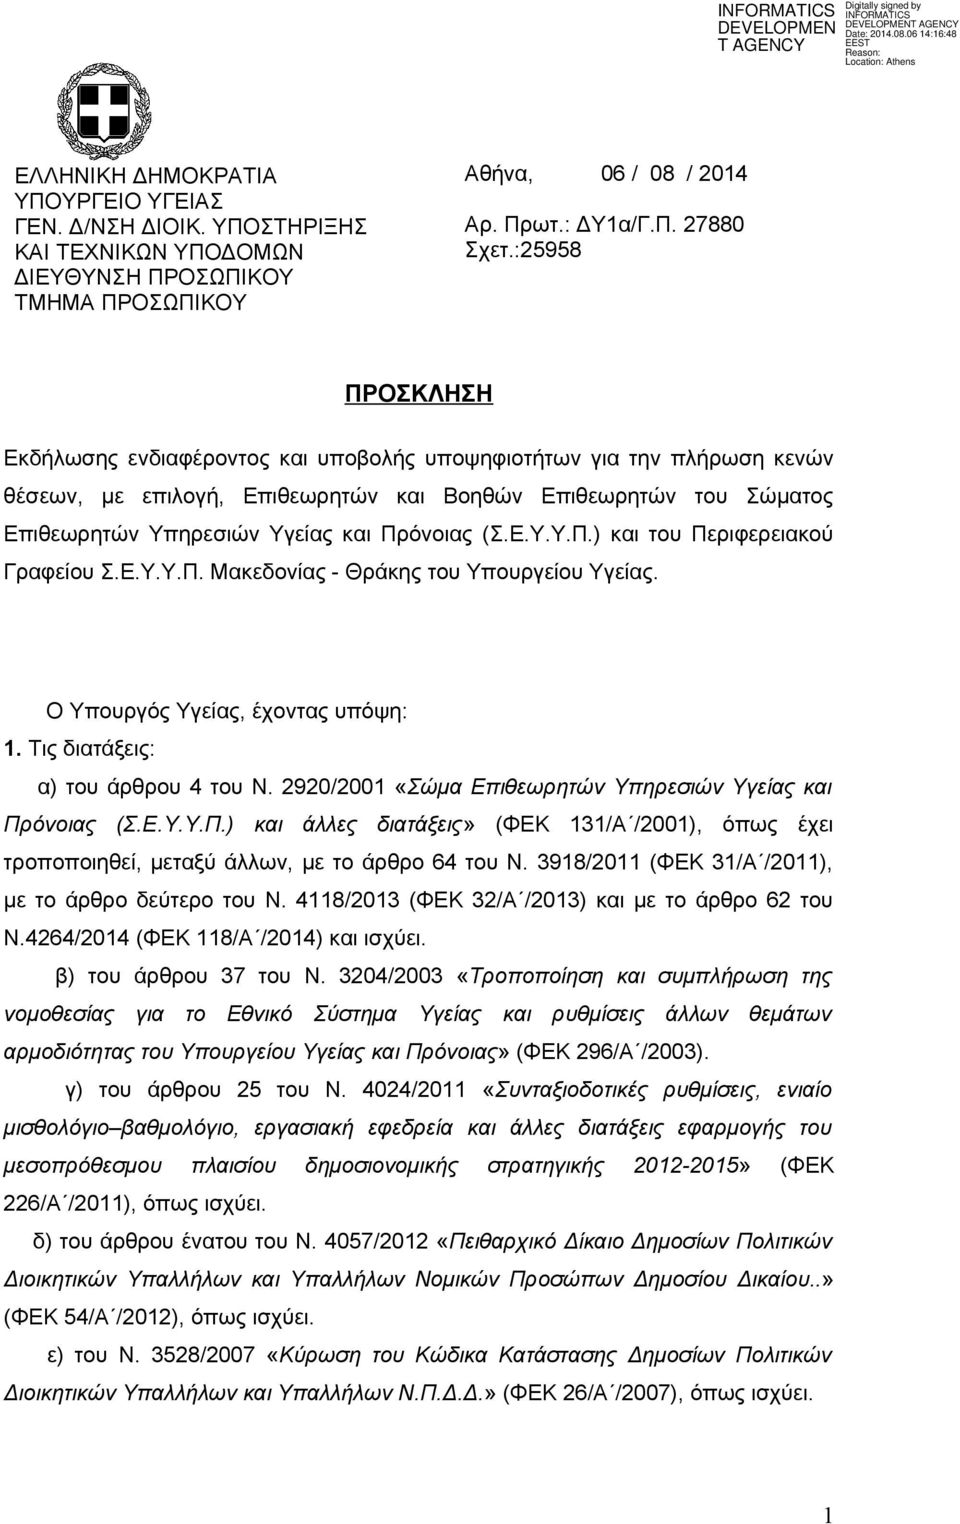 (Σ.Ε.Υ.Υ.Π.) και του Περιφερειακού Γραφείου Σ.Ε.Υ.Υ.Π. Μακεδονίας - Θράκης του Υπουργείου Υγείας. Ο Υπουργός Υγείας, έχοντας υπόψη: 1. Τις διατάξεις: α) του άρθρου 4 του Ν.